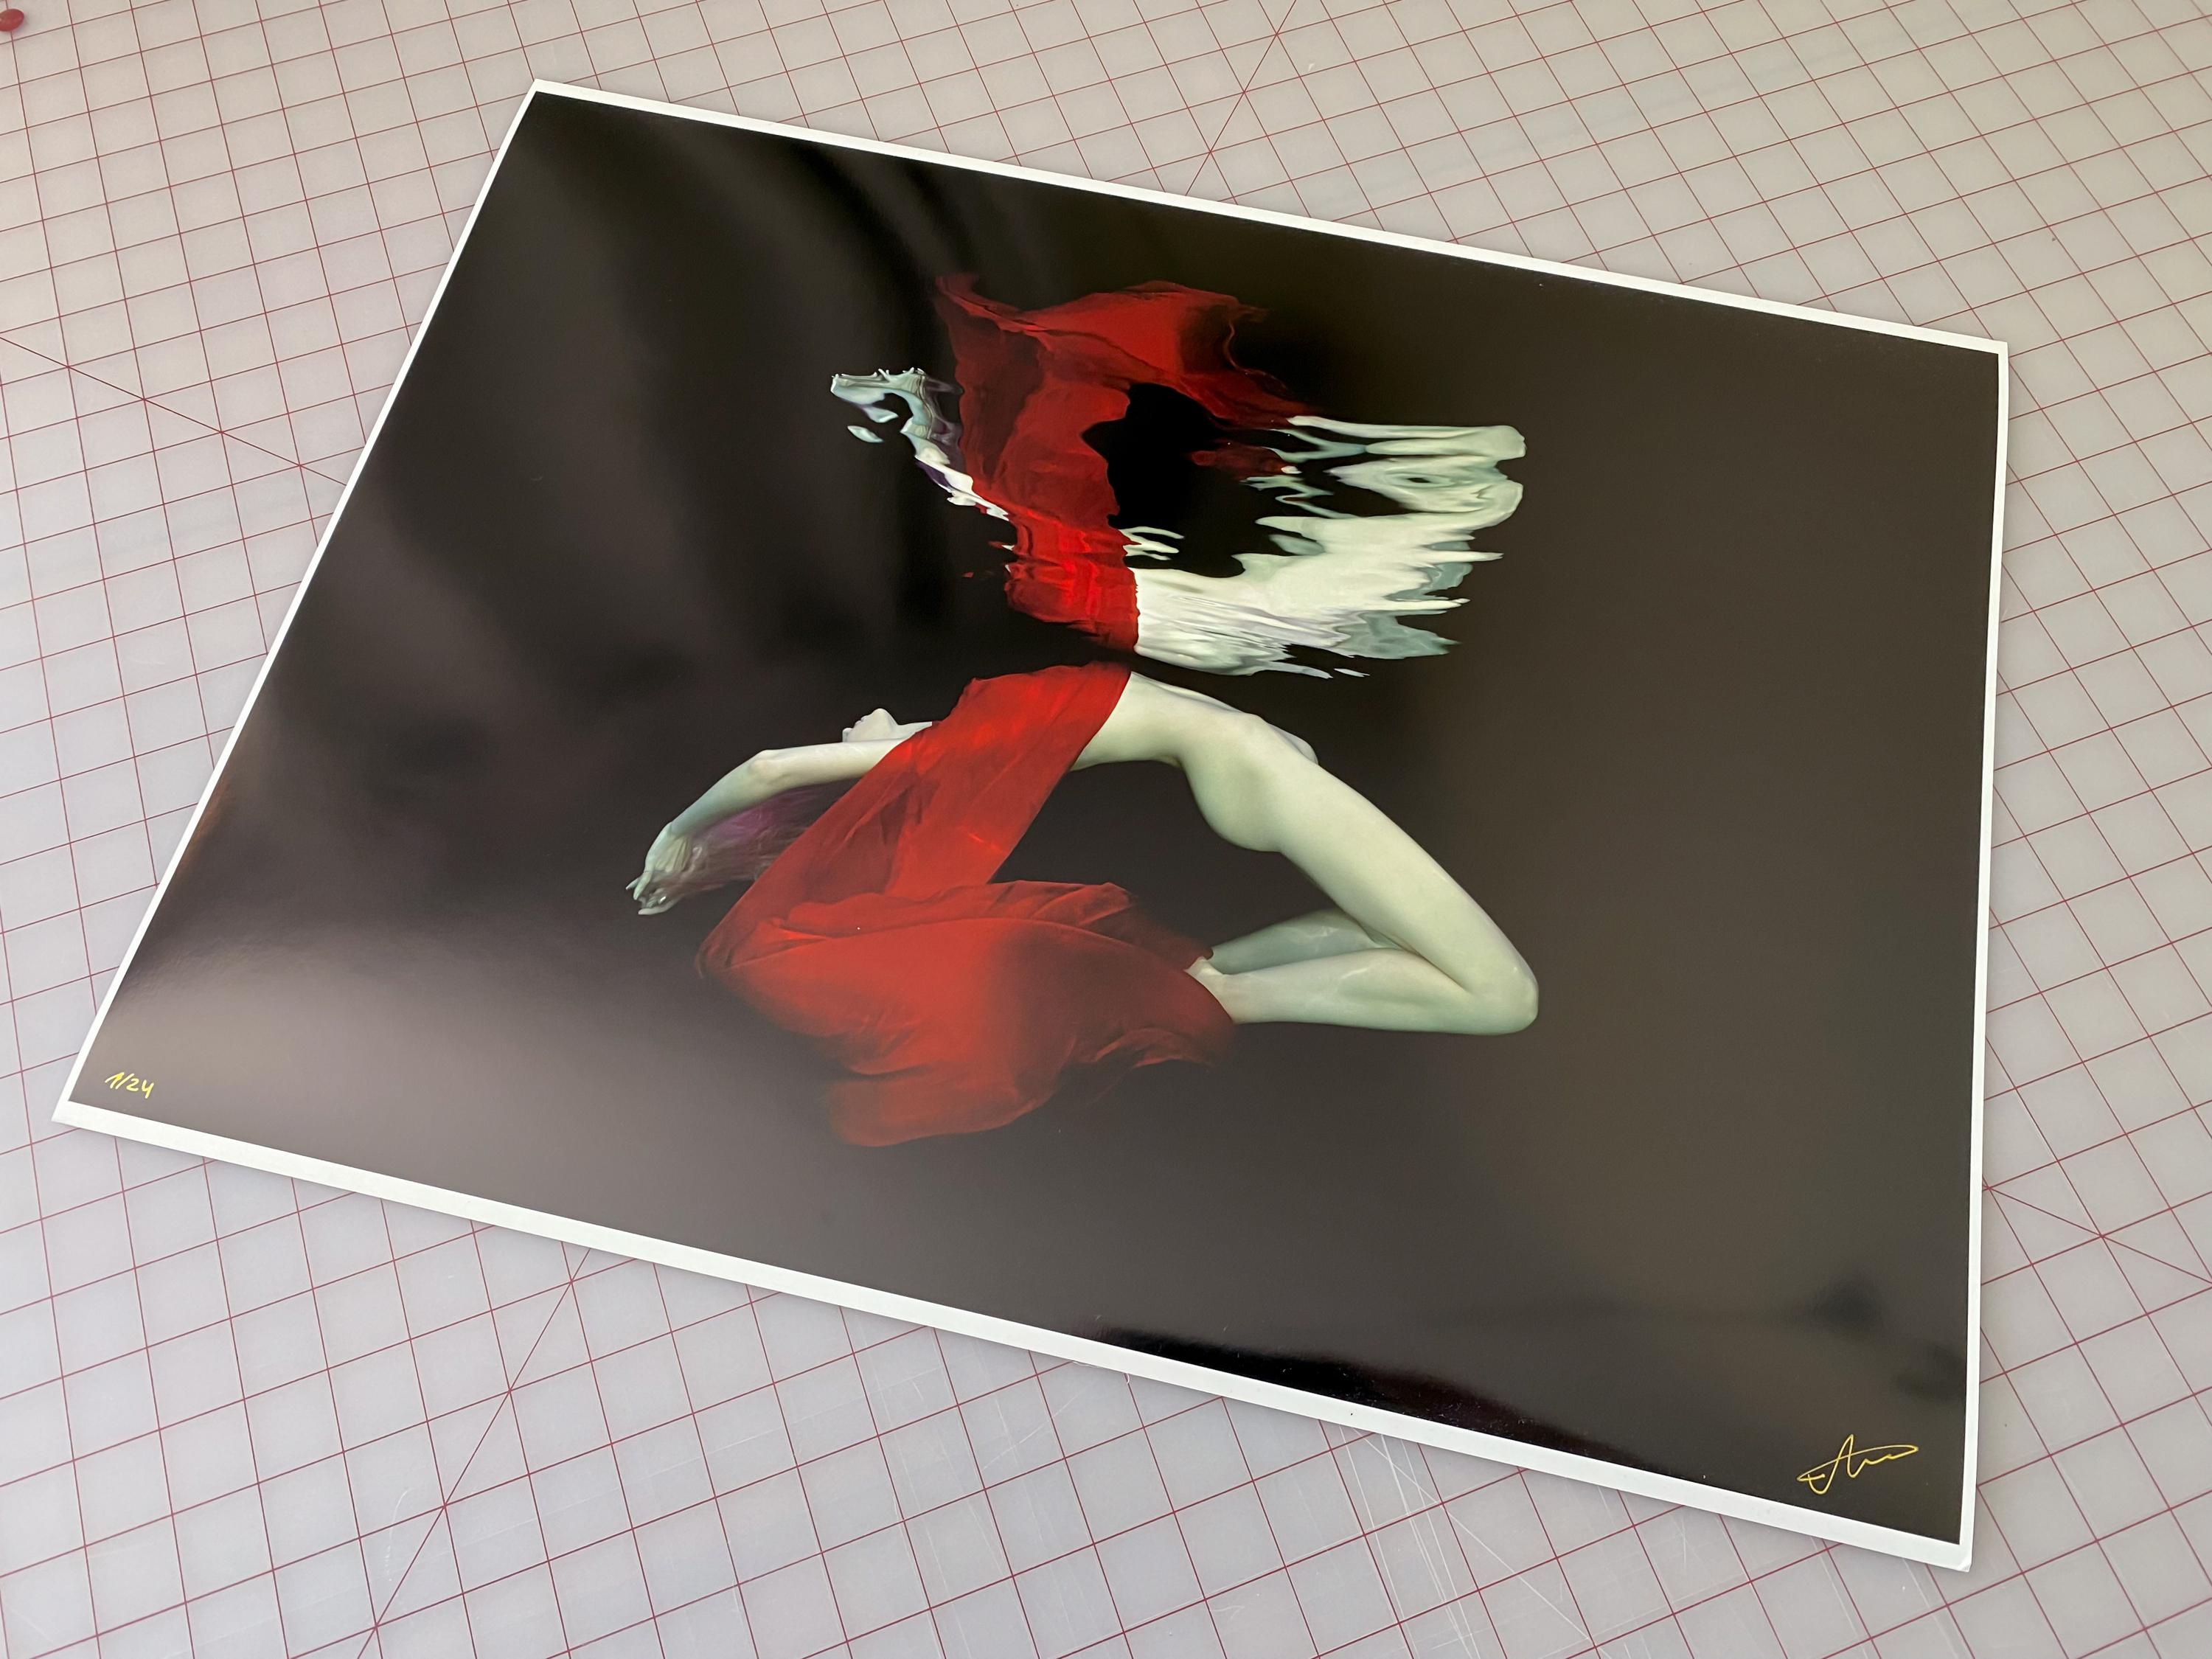 Ein Unterwasserfoto einer nackten jungen Frau, die teilweise in einen leuchtend roten Schal gehüllt ist - auf schwarzem Hintergrund.

Original-Pigmentdruck in Galeriequalität, vom Künstler signiert. 
Limitierte Auflage von 24 Stück
Das Kunstwerk ist